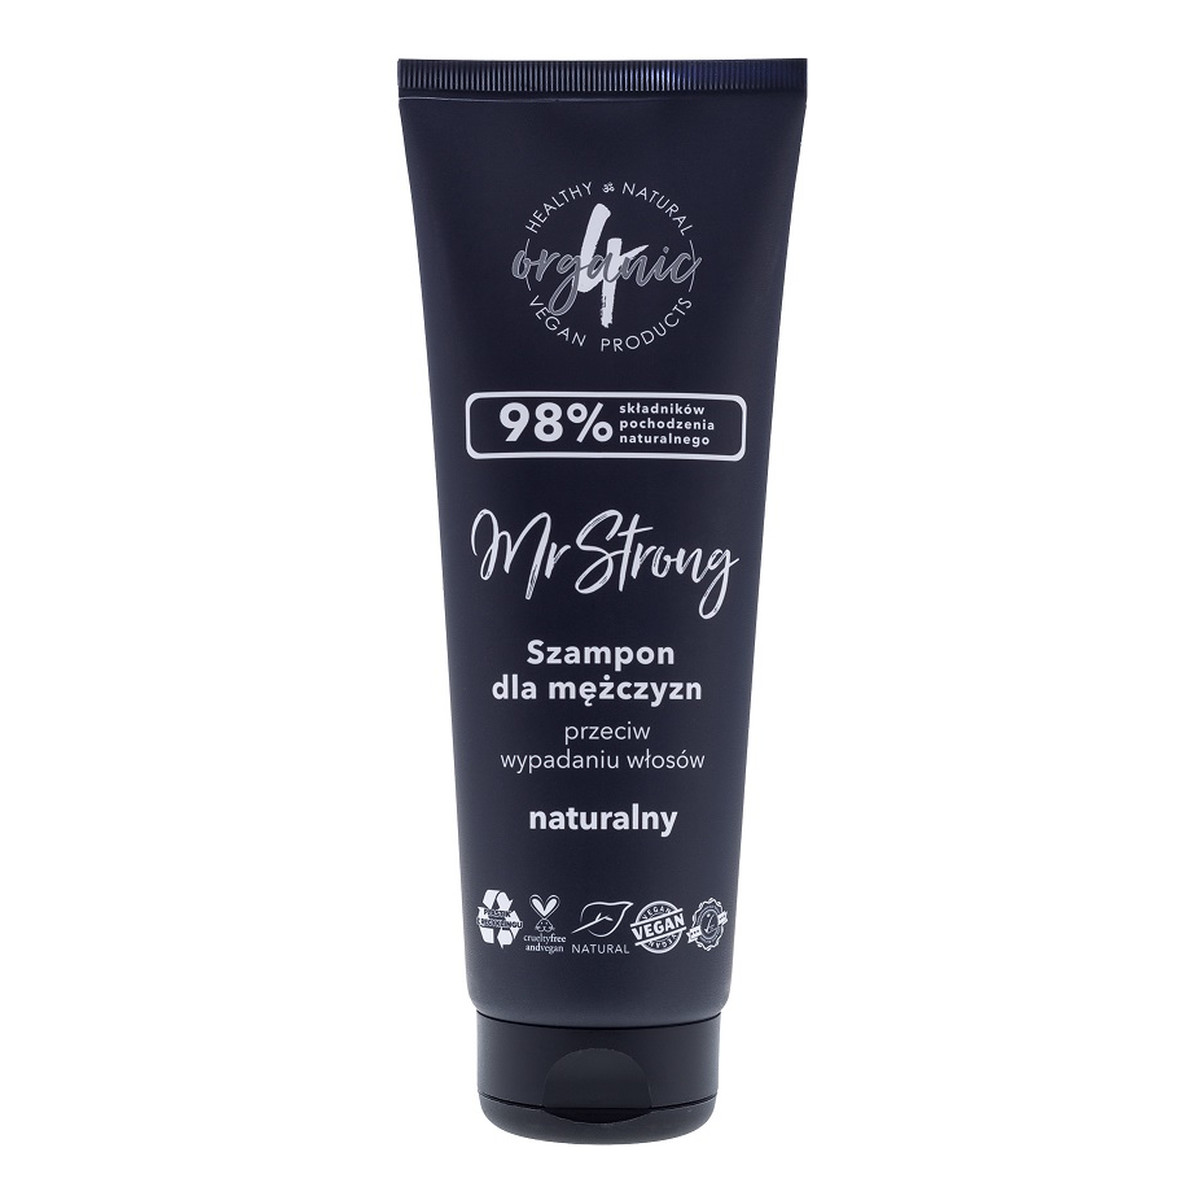 4organic Mr strong szampon dla mężczyzn przeciw wypadaniu włosów 250ml